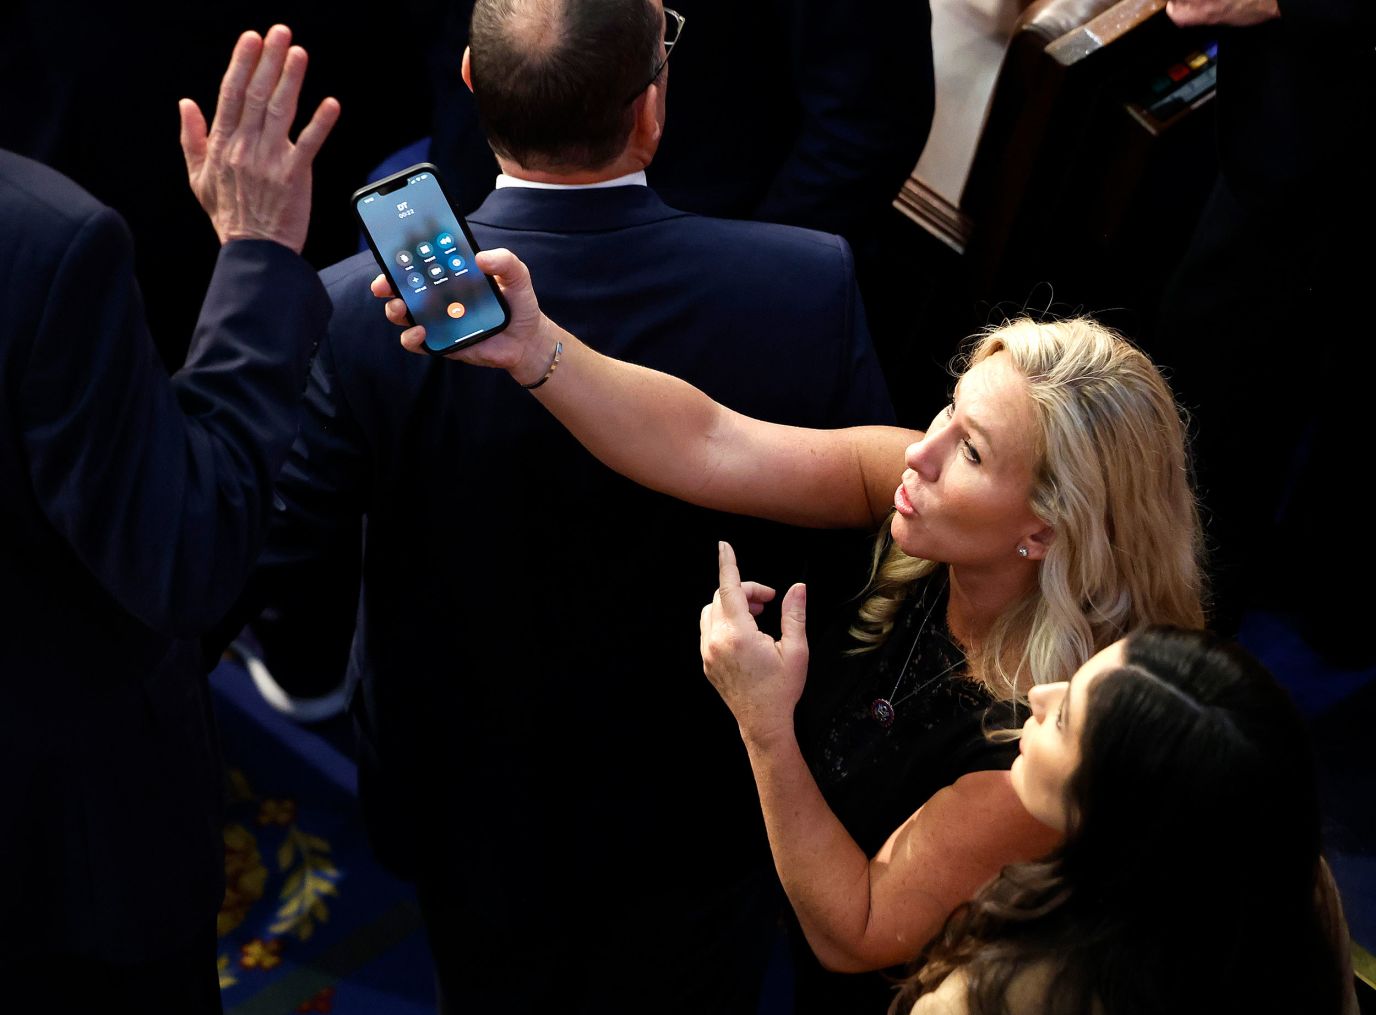 Die US-Abgeordnete Marjorie Taylor-Greene, eine Republikanerin aus Georgia, hält ein Telefon mit den Initialen "DT" am Freitagabend auf dem Bildschirm.  Ihr Sprecher bestätigte am Telefon, dass es sich um den ehemaligen Präsidenten Donald Trump handelte.